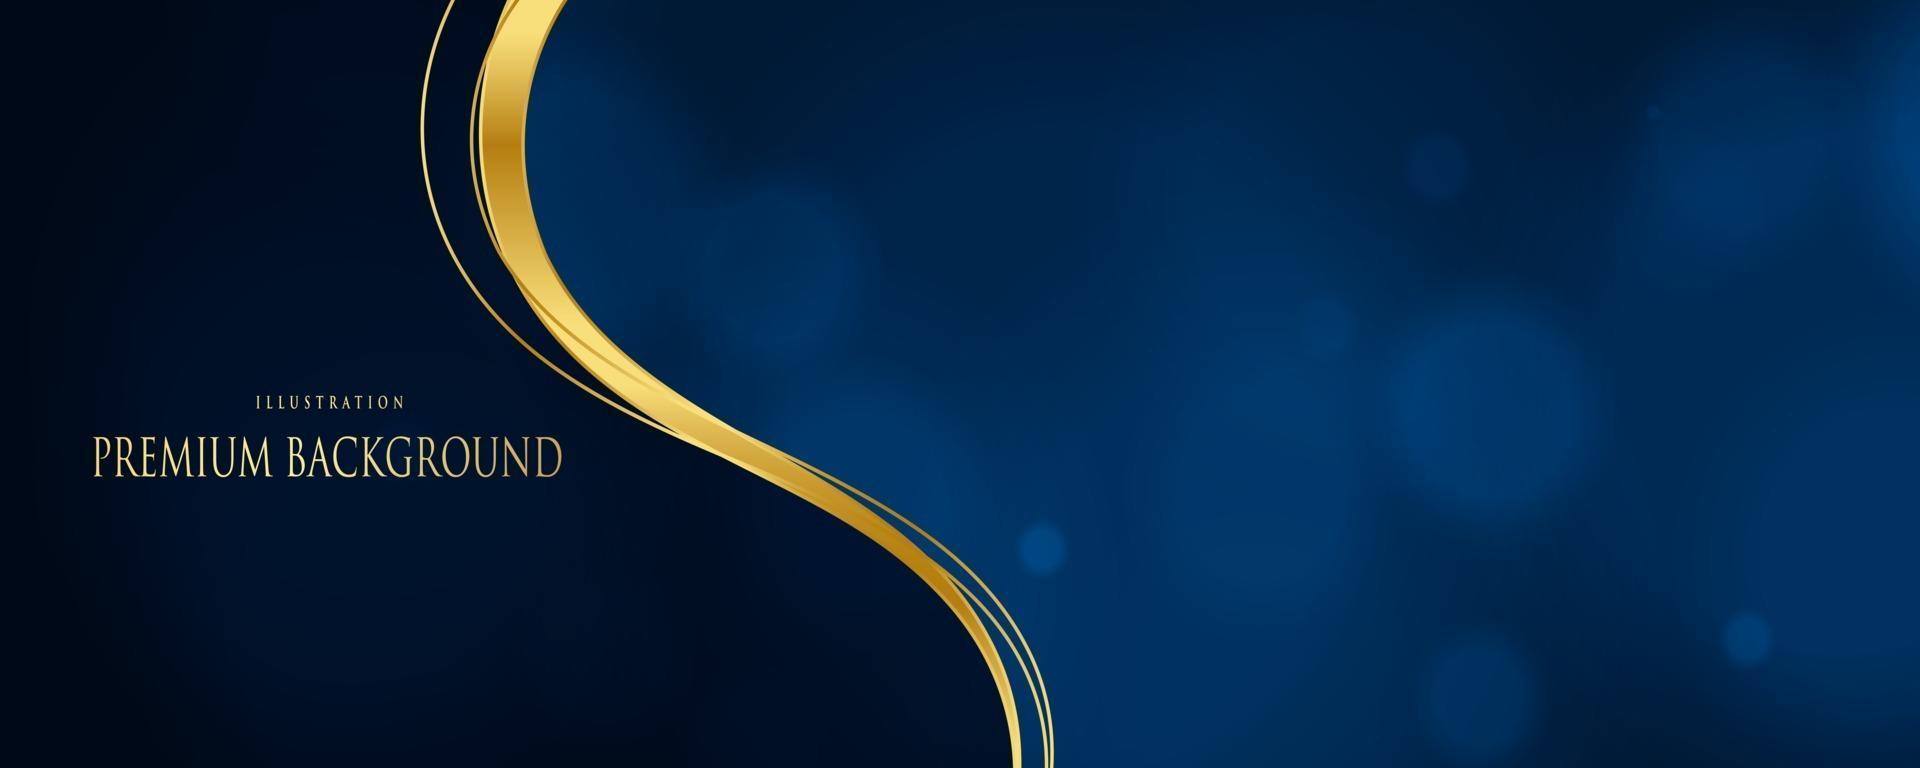 abstrakter blauer Hintergrund mit goldenen Wellen in einer luxuriösen und einfachen Vektorillustration vektor